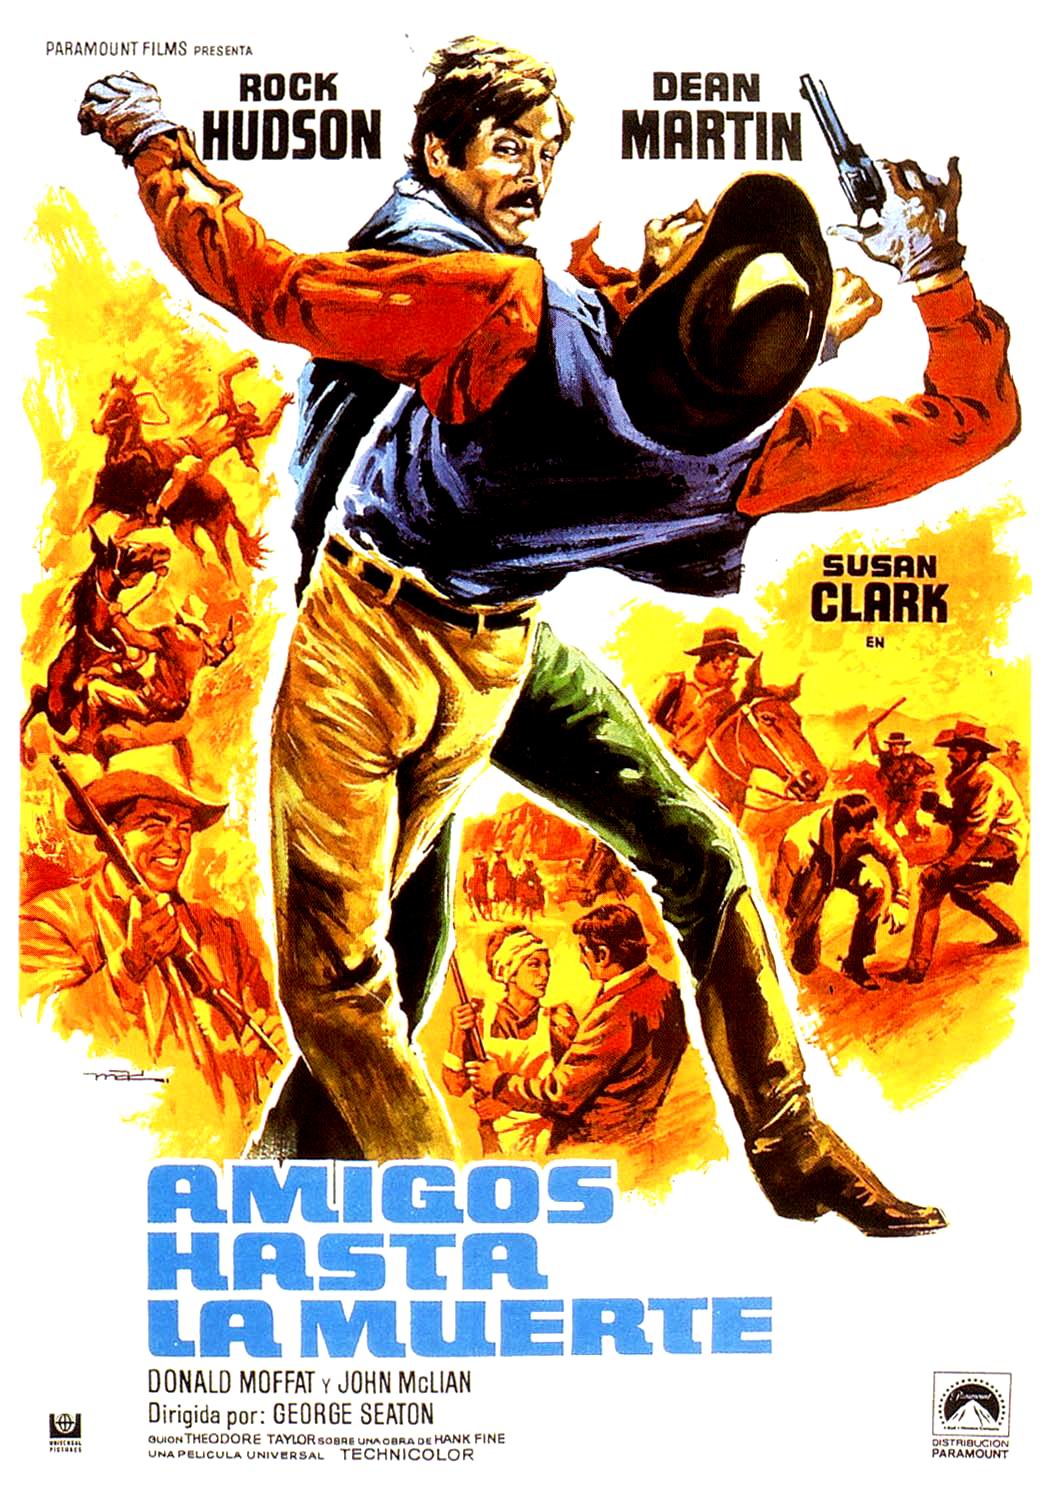 Duel dans la poussière (1972) George Seaton - Showdown (11.04.1972 / 1972)